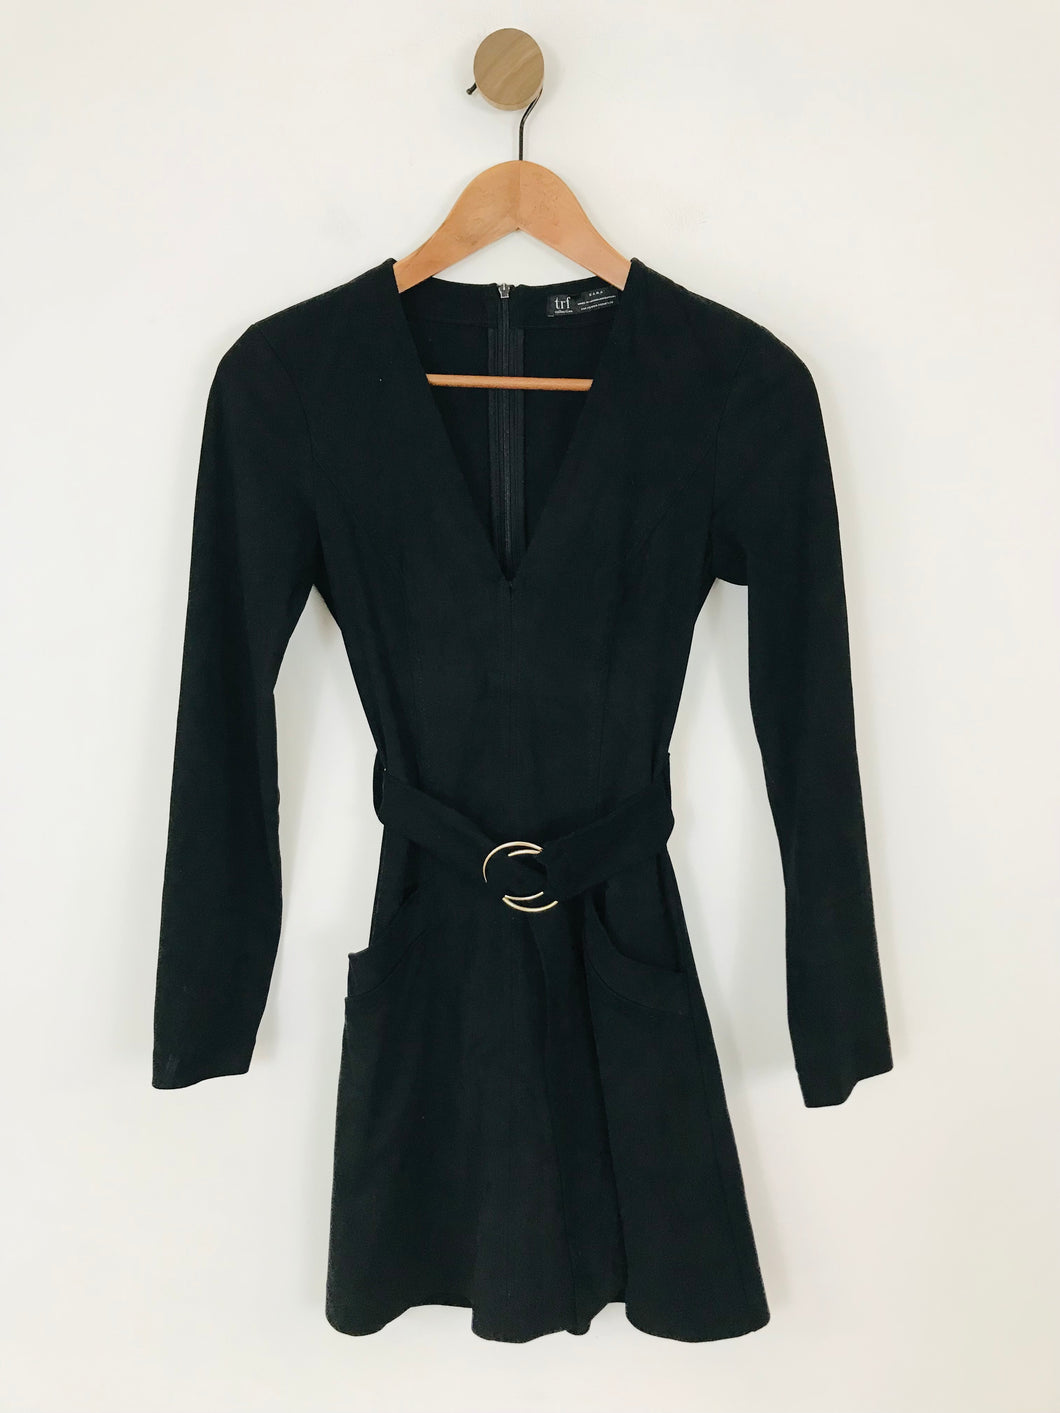 Zara Women's Faux Suede Long Sleeve A-Line Dress | XS UK6-8 | Black